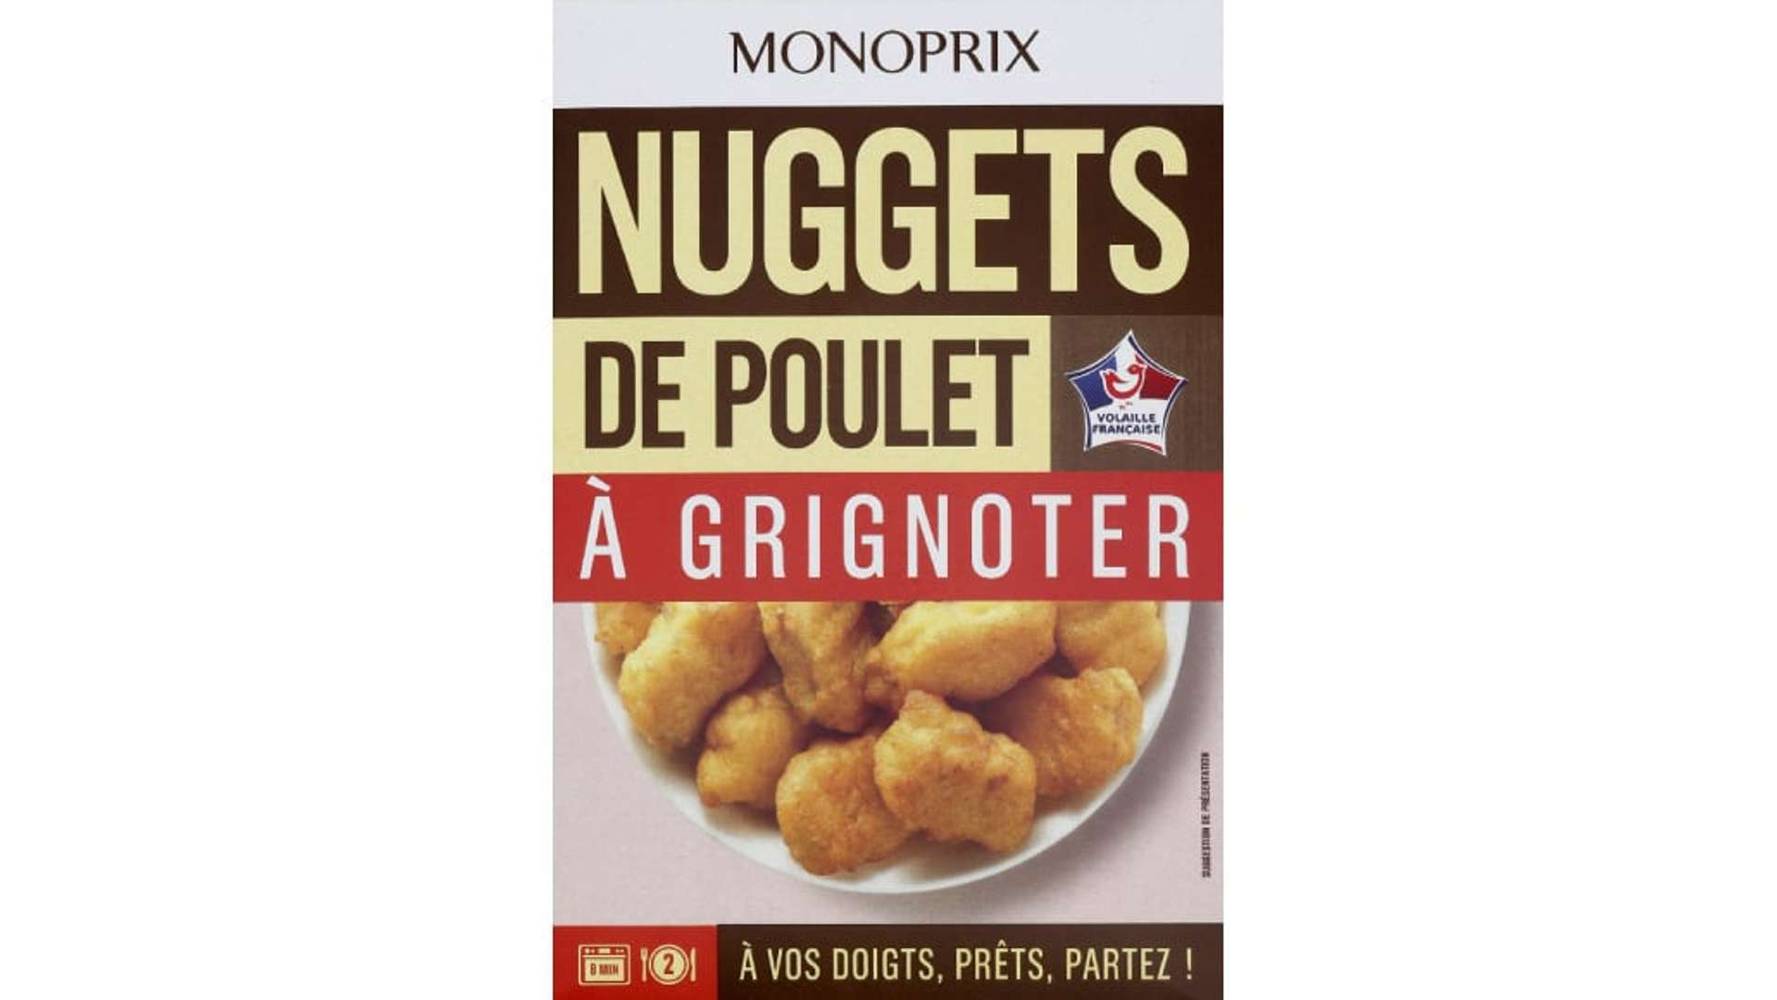 Monoprix - Nuggets de poulet grignoter